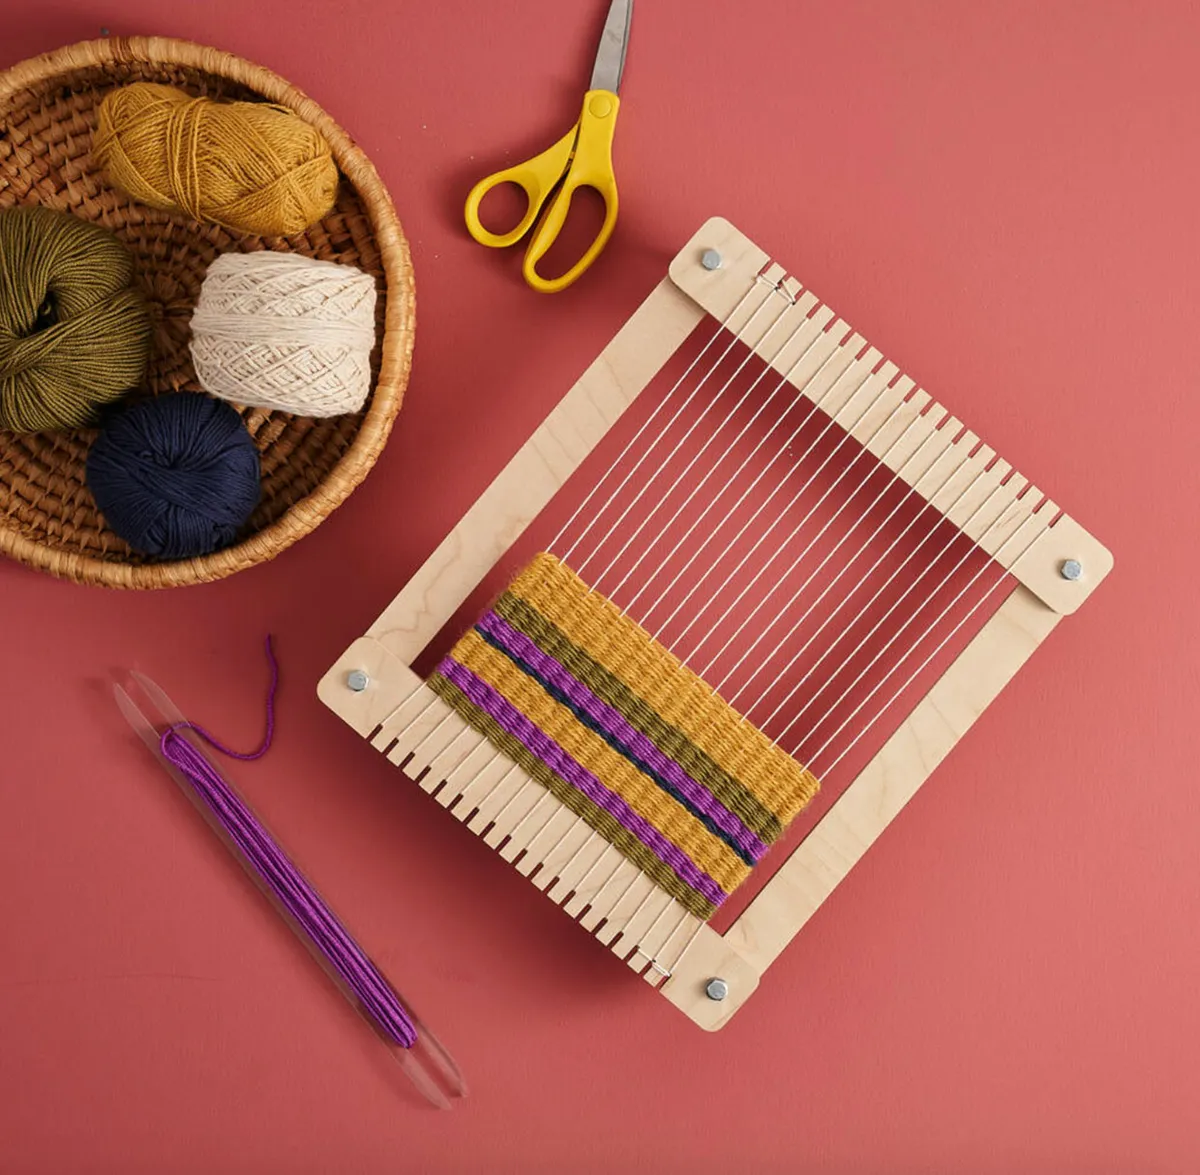 Beginners loom kit